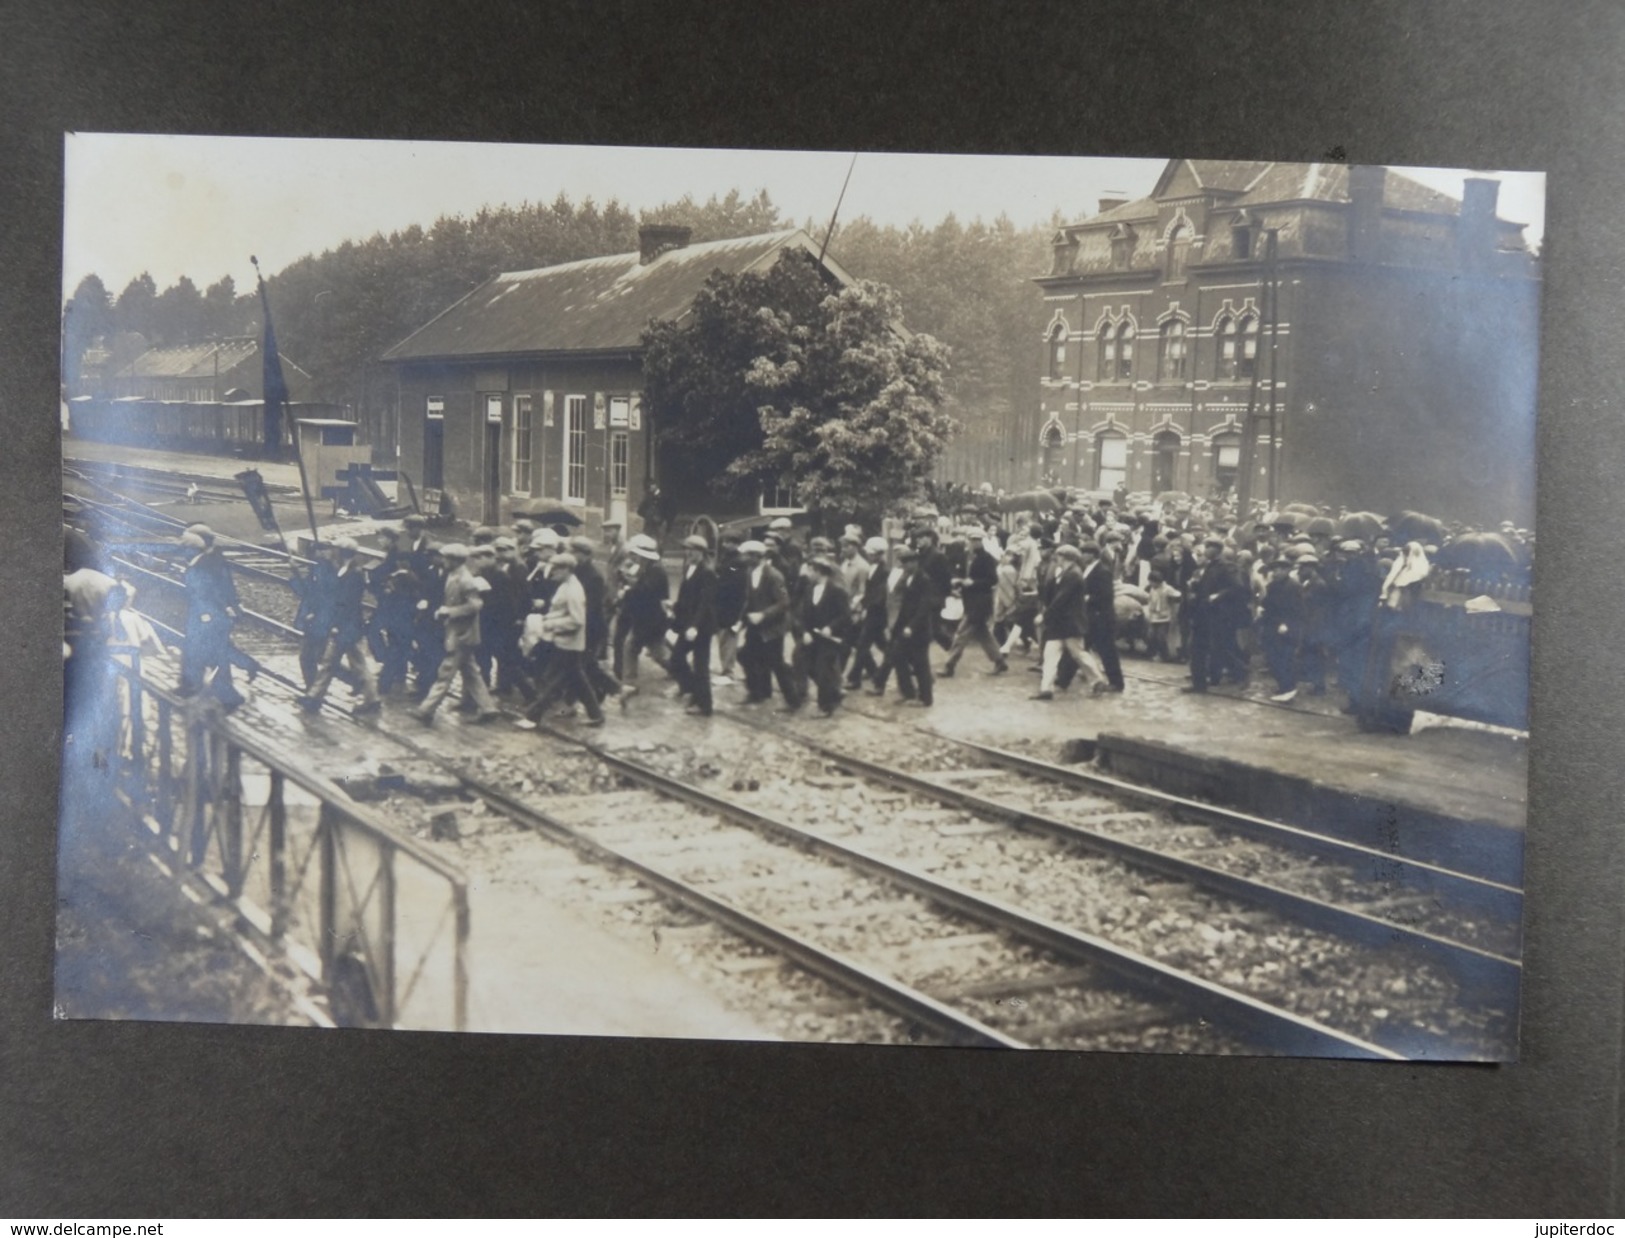 Grèves de Mont-sur-Marchienne 1925 Lot de 14 cartes photos et 38 photos